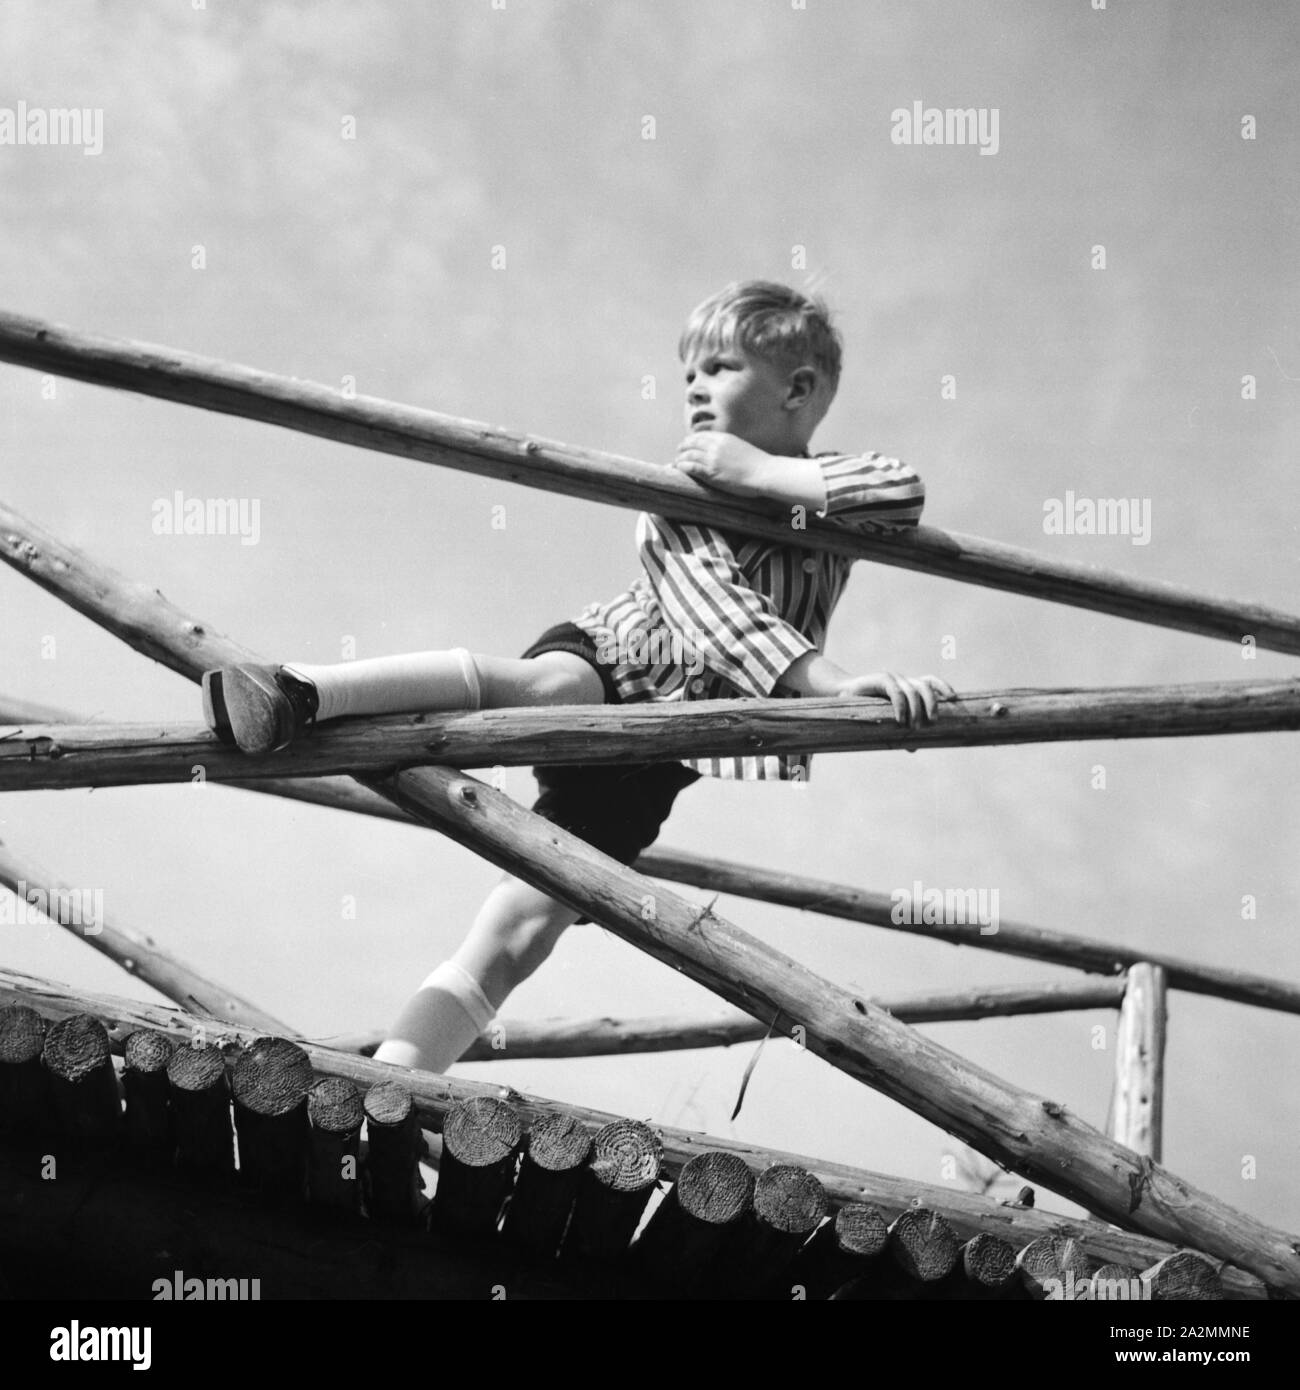 Ein Junge spielt und einem klettert un Holzgerüst, 1930er Jahre Deutschland. Un petit garçon jouer et grimper sur un cadre woodden, Allemagne 1930. Banque D'Images